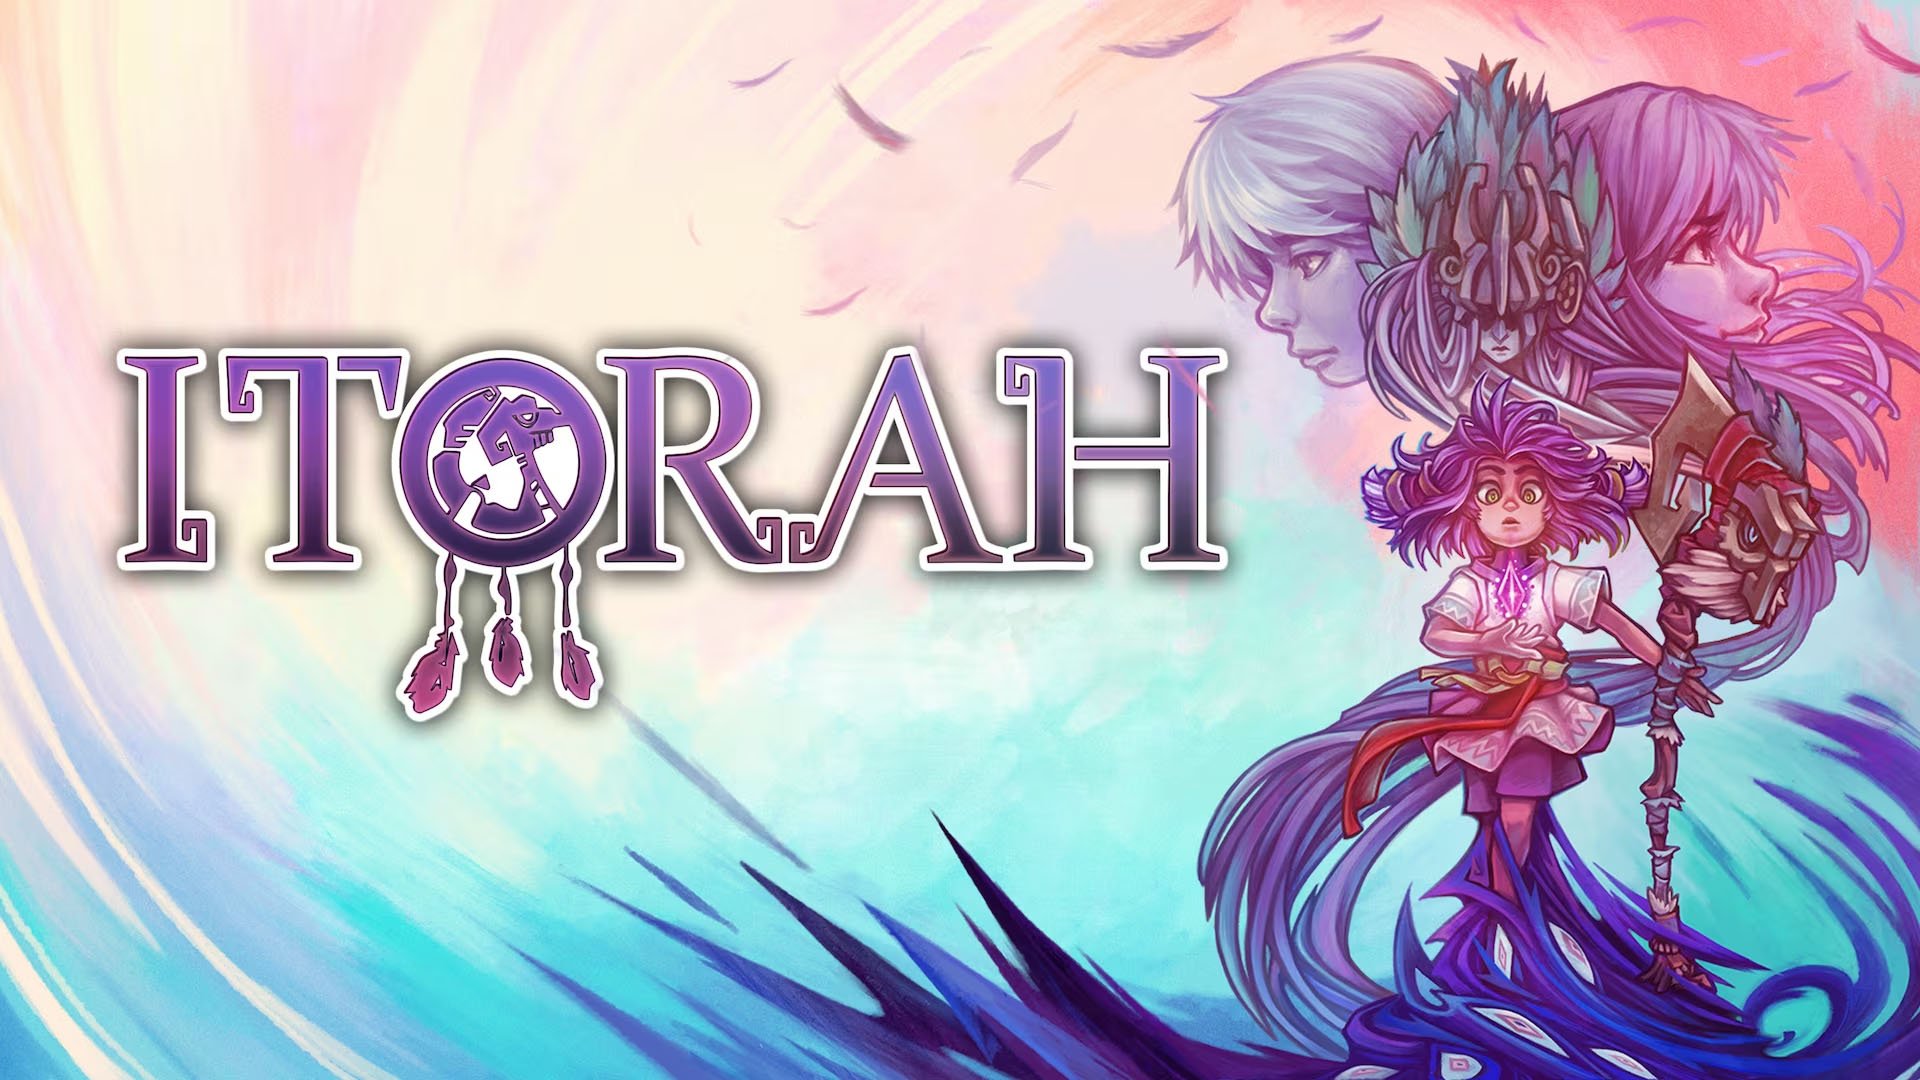 ITORAH is nu beschikbaar voor PS4, Xbox One en Switch